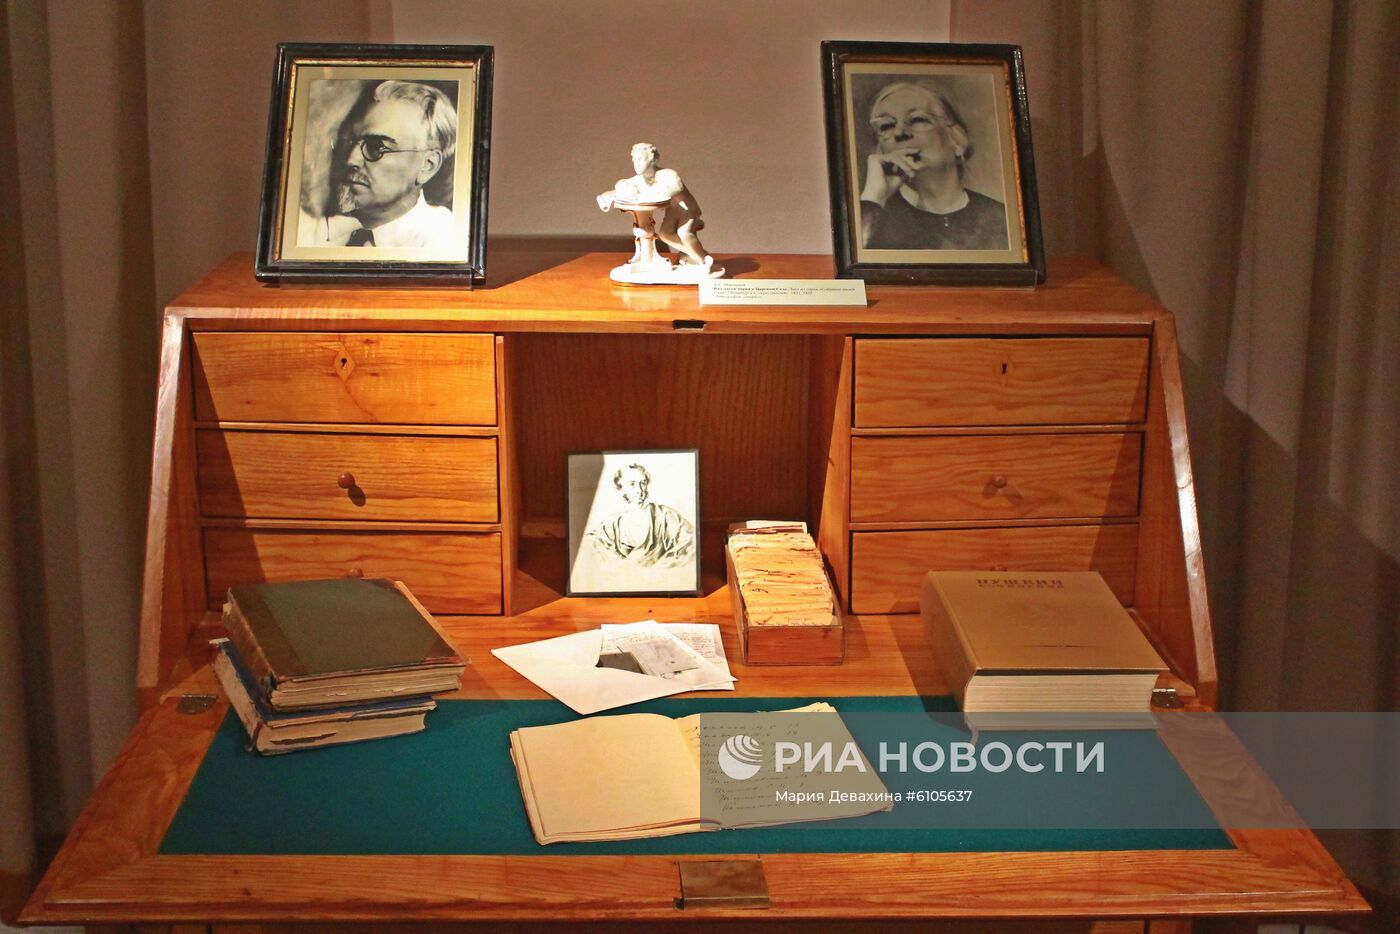 Выставка "Храните рукопись" в Москве